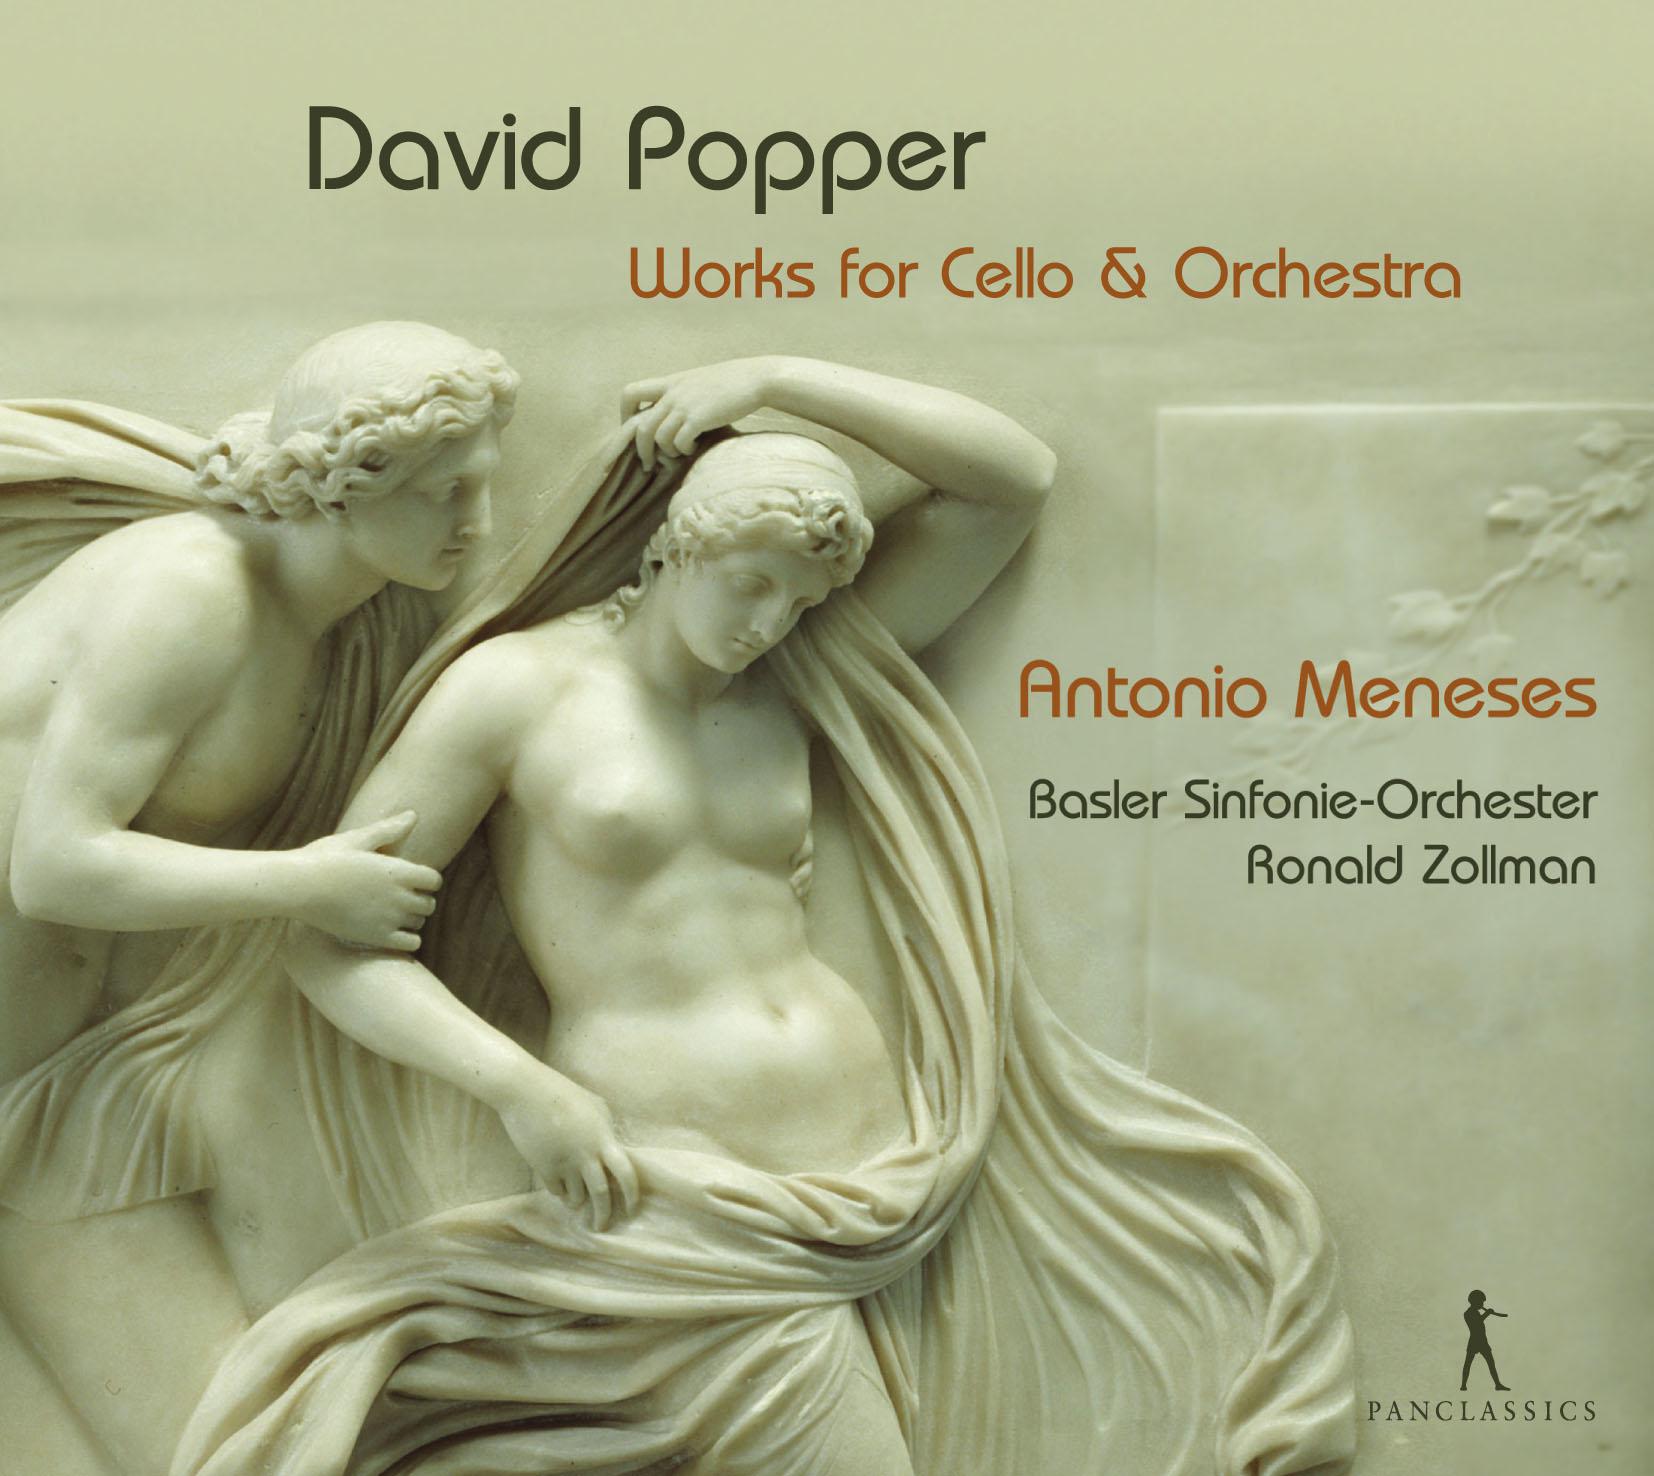 Cello Concerto No. 2 in E Minor, Op. 24: III. Allegro molto moderato